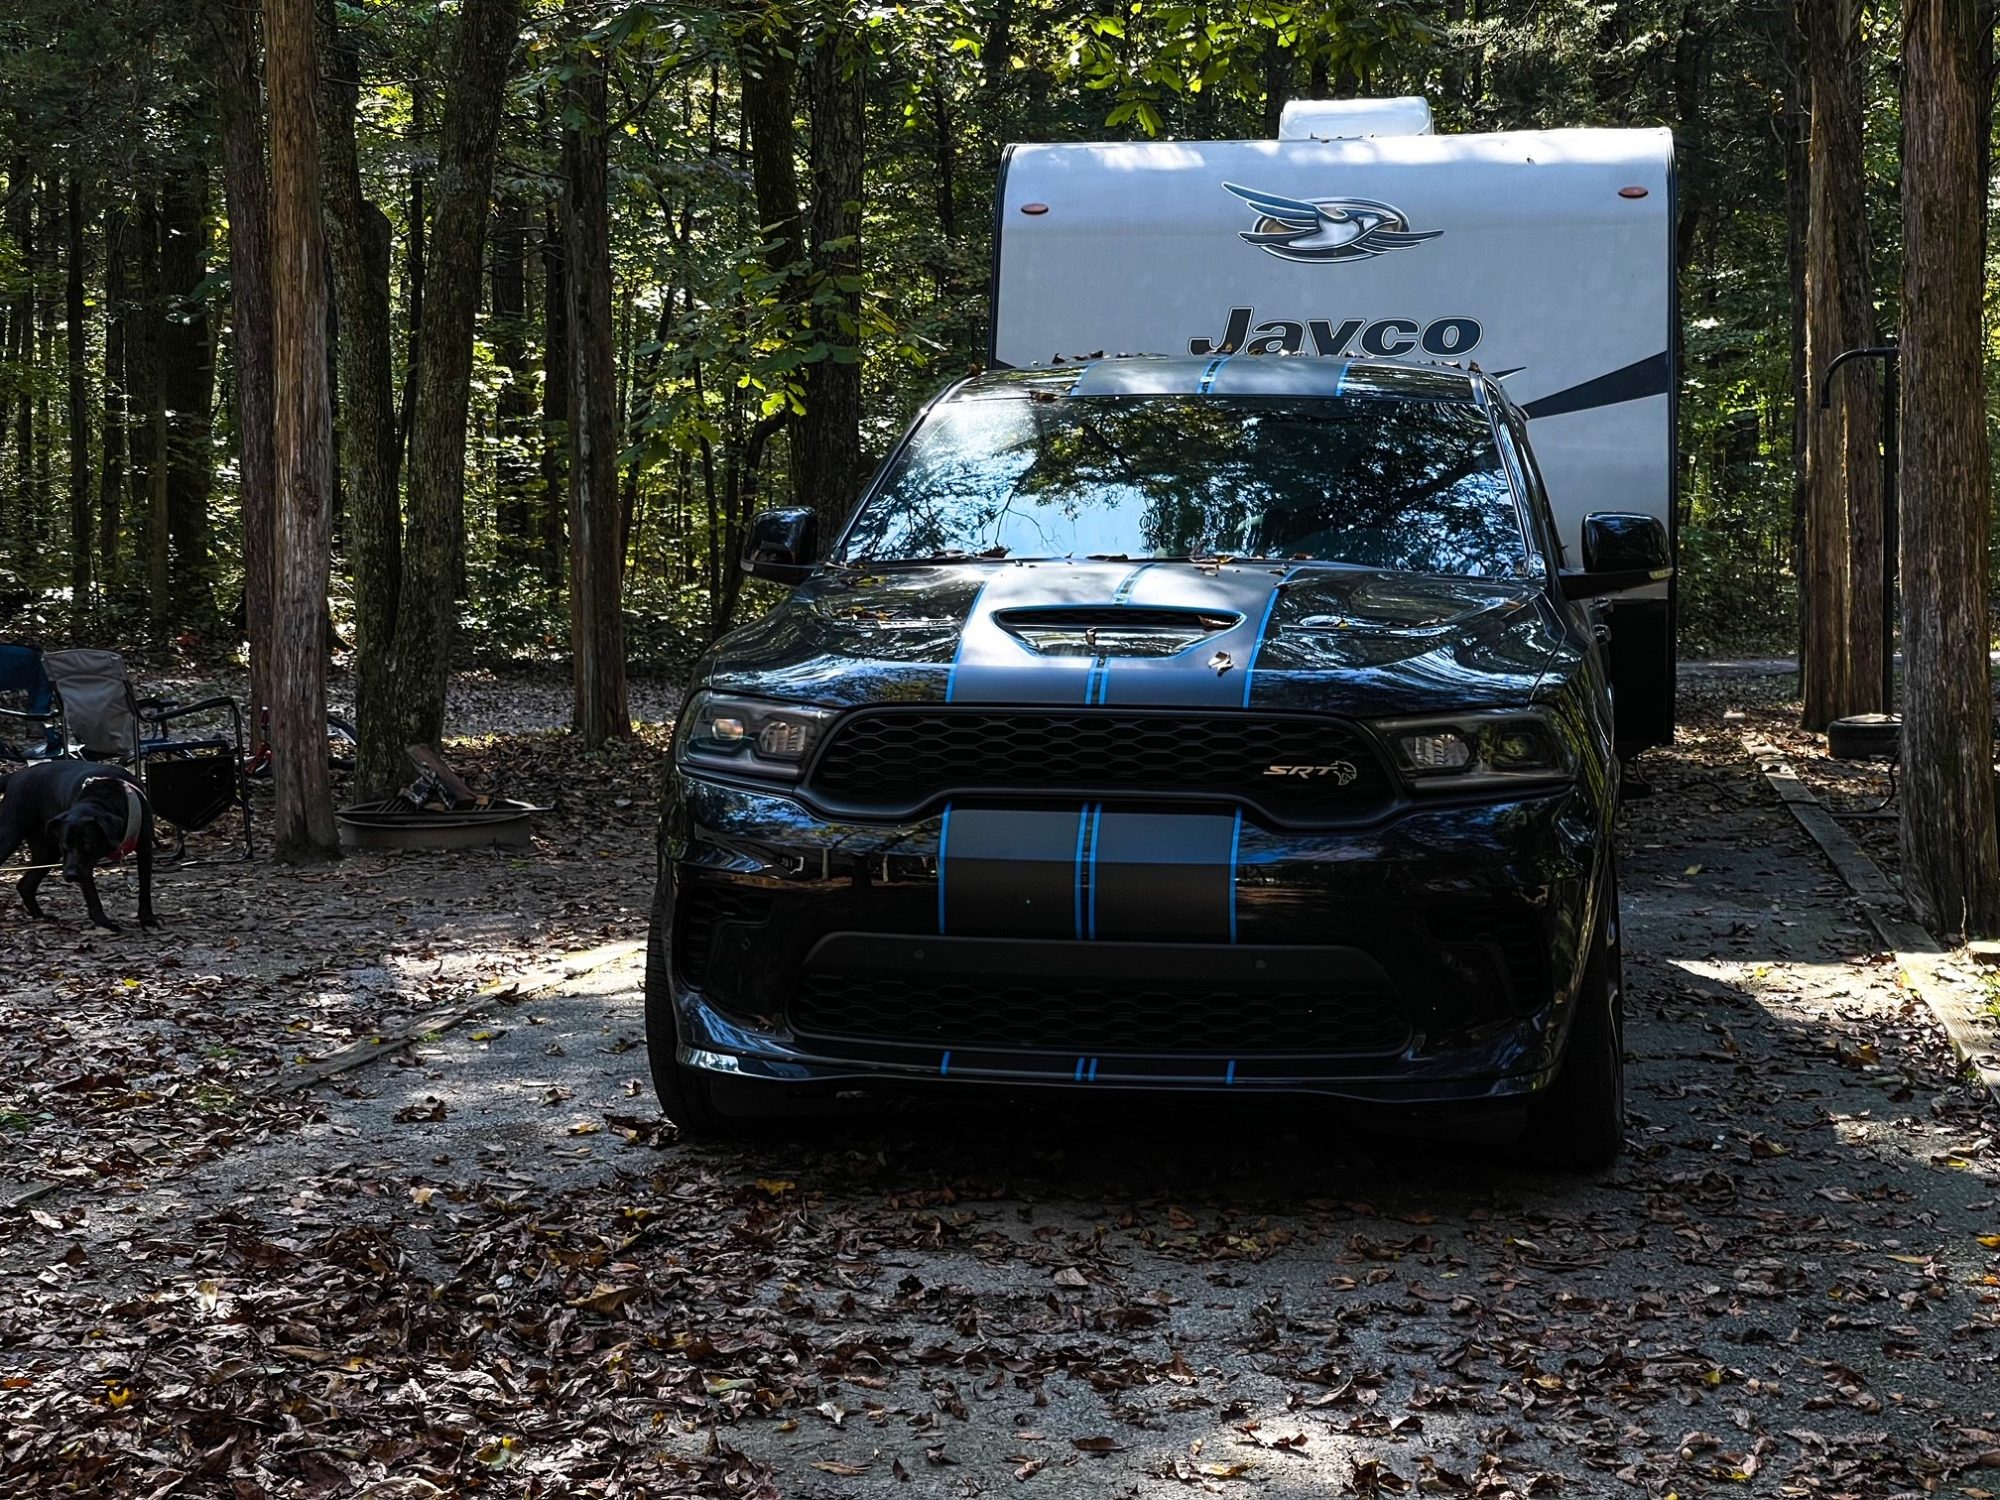 Durango SRT Hellcat pulling a camper trailer